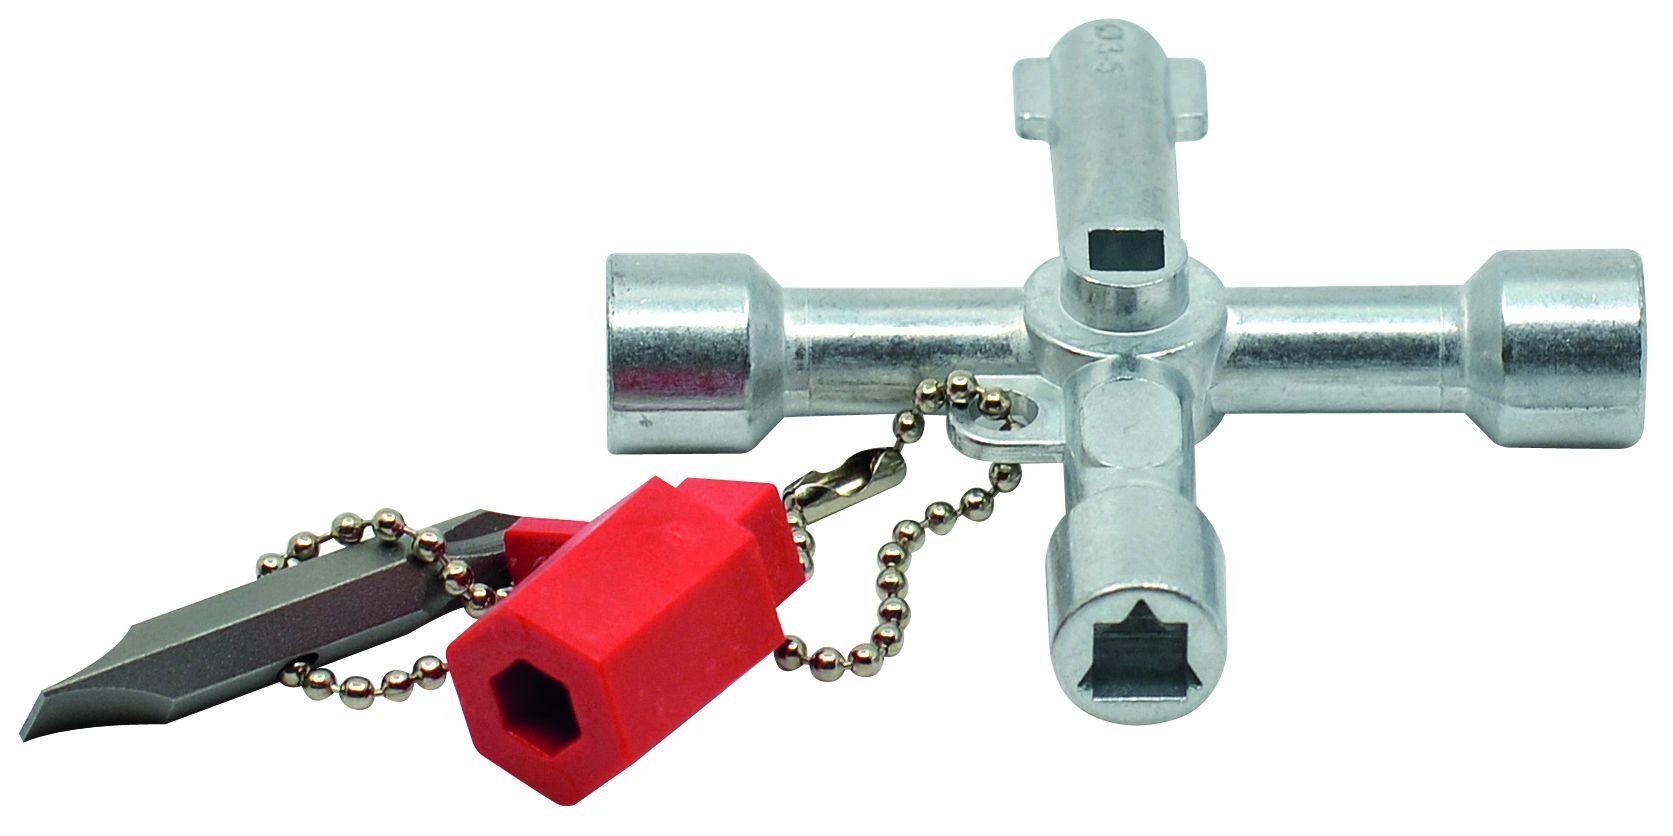 10 Funktionen Schuebo Schaltschrankschlüssel Innenvierkant Schaltschrank-Schlüssel Schuebo